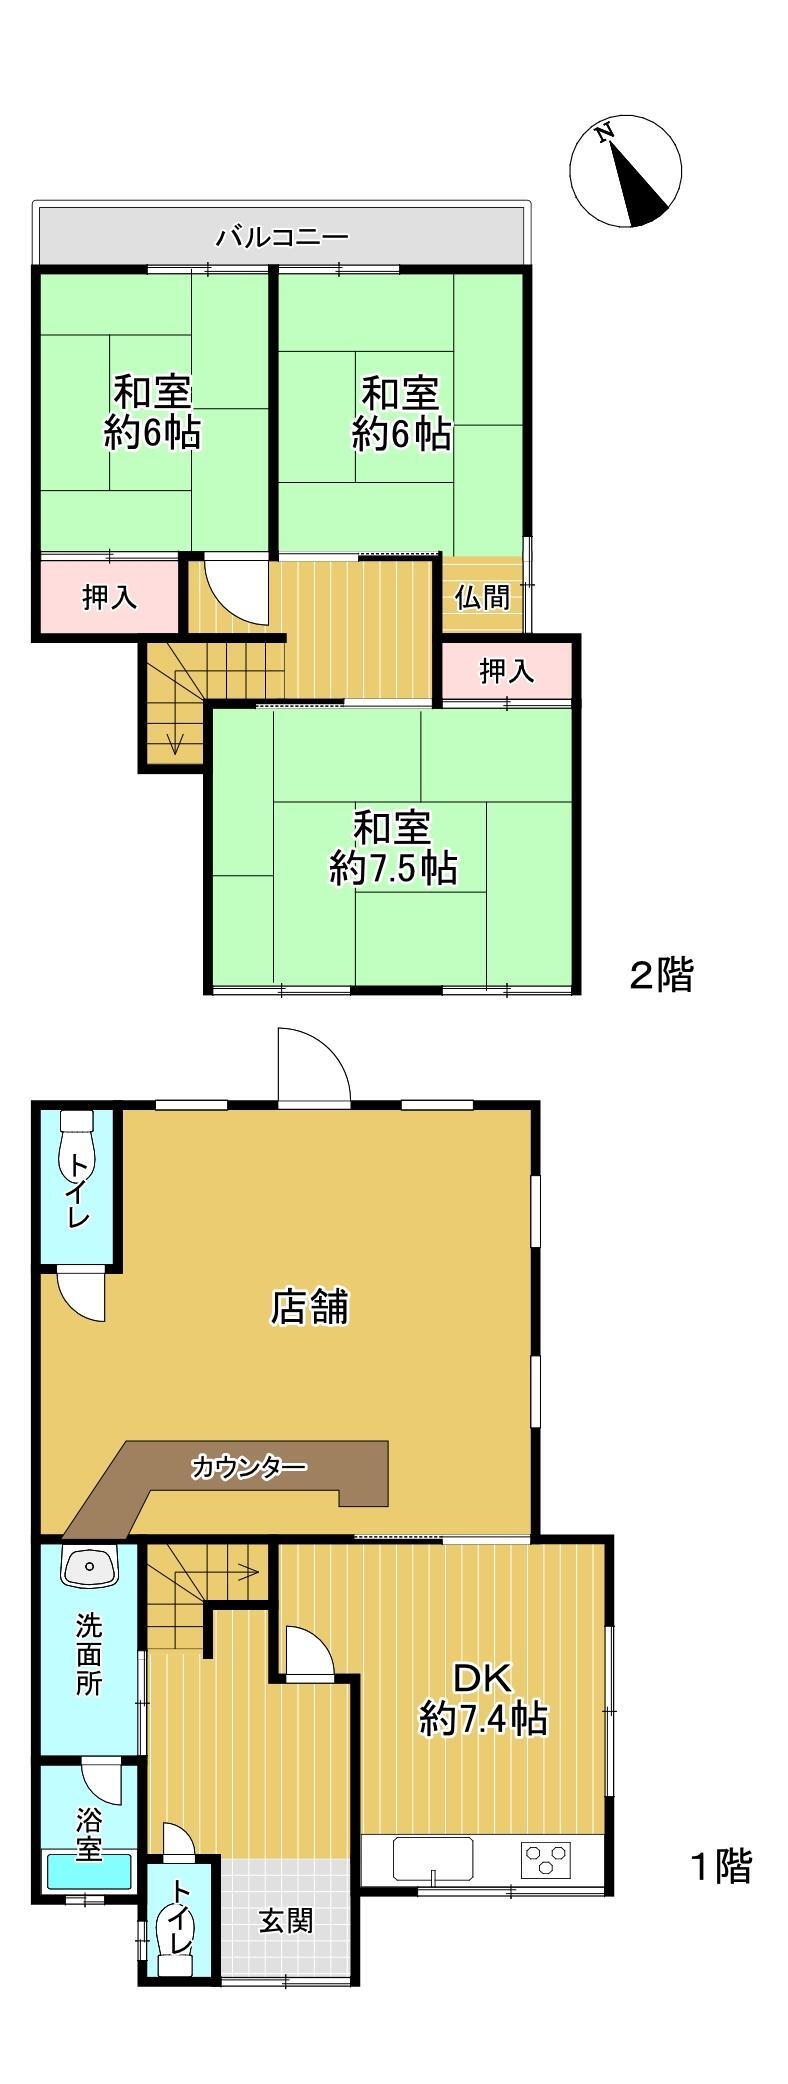 木川町（草津駅）　１５００万円 1500万円、3DK、土地面積124m<sup>2</sup>、建物面積100.88m<sup>2</sup> 。1階に店舗・DK、2階に和室3部屋が配置されています。全居室6帖以上の広さ。トイレは、店舗部分・居住スペースのそれぞれに設置されています。バルコニーは南東向きです。